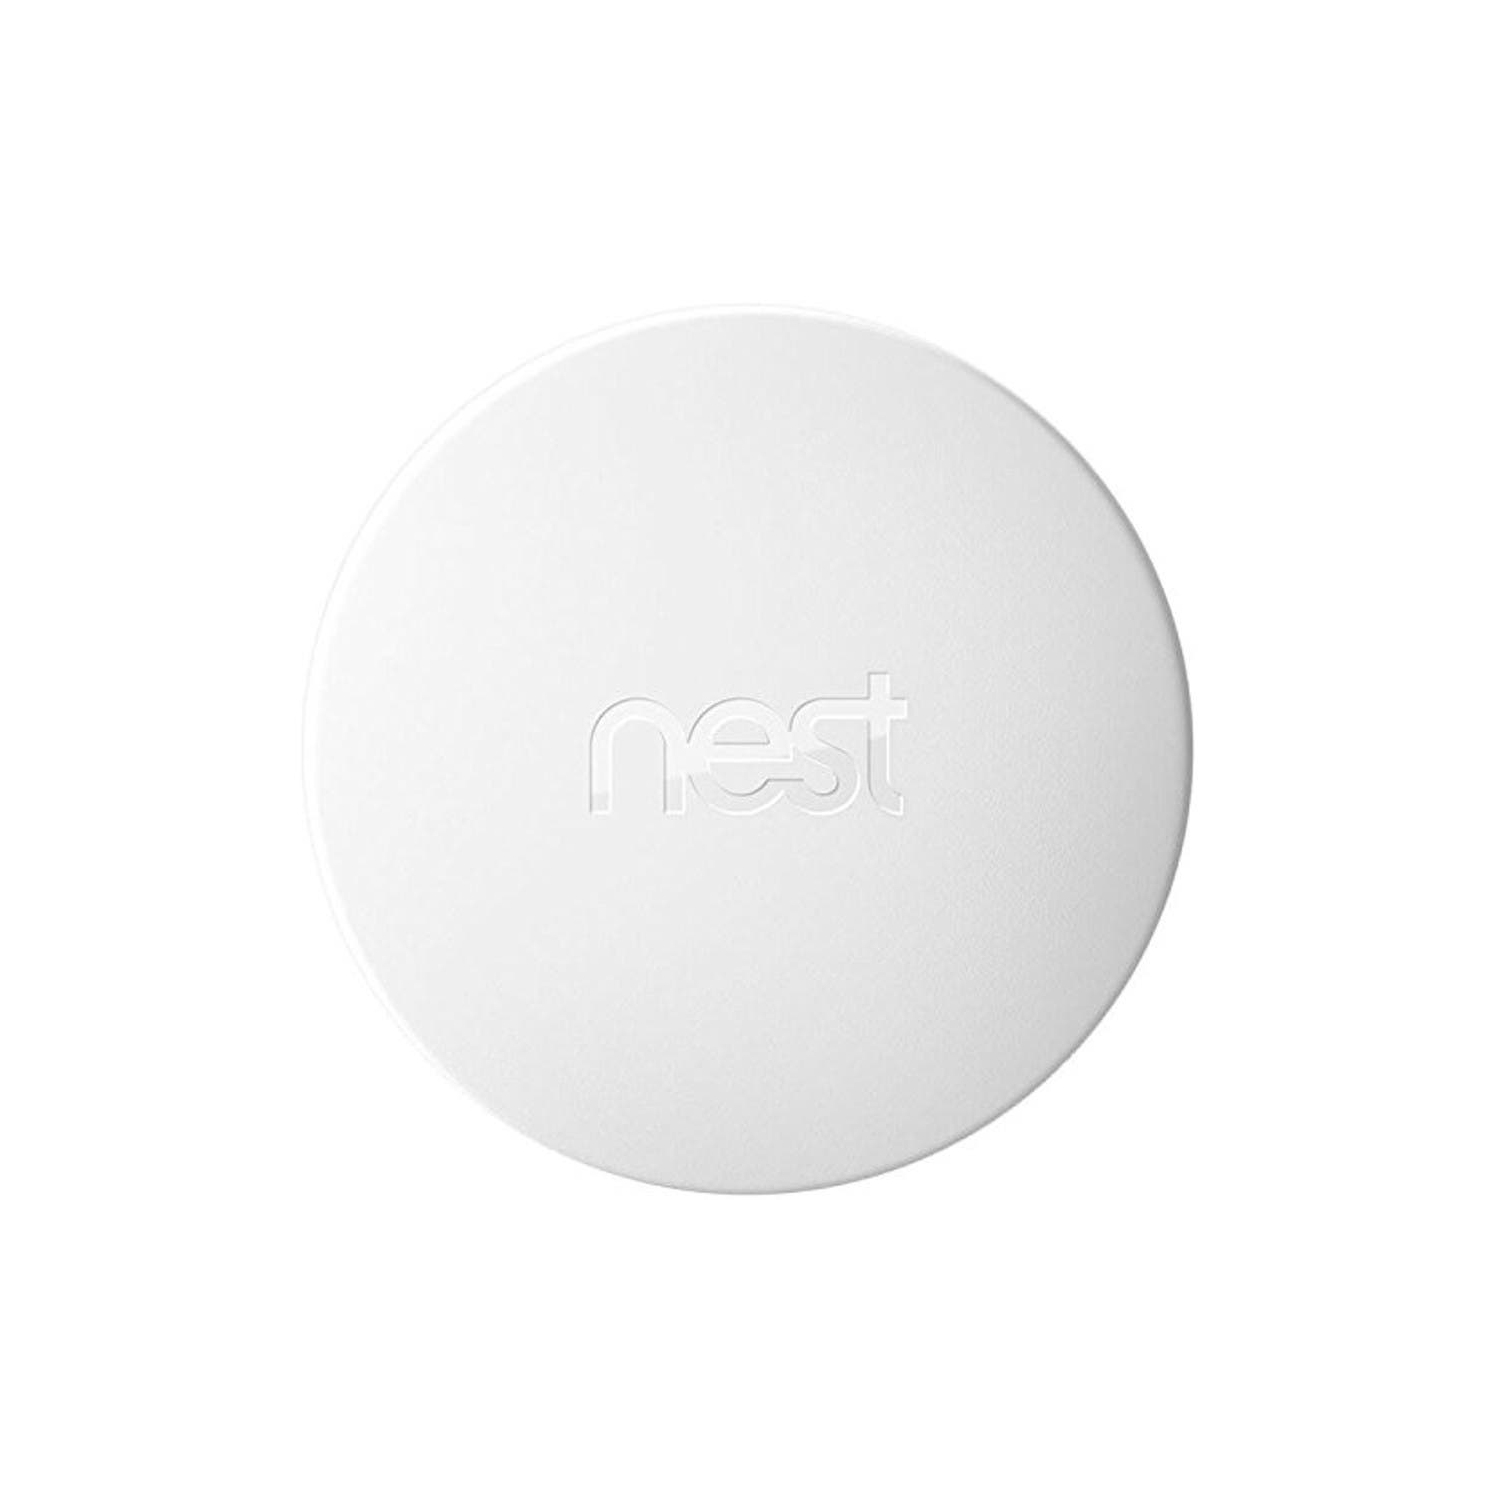 Nest Temperature Sensor - White (Original Version)